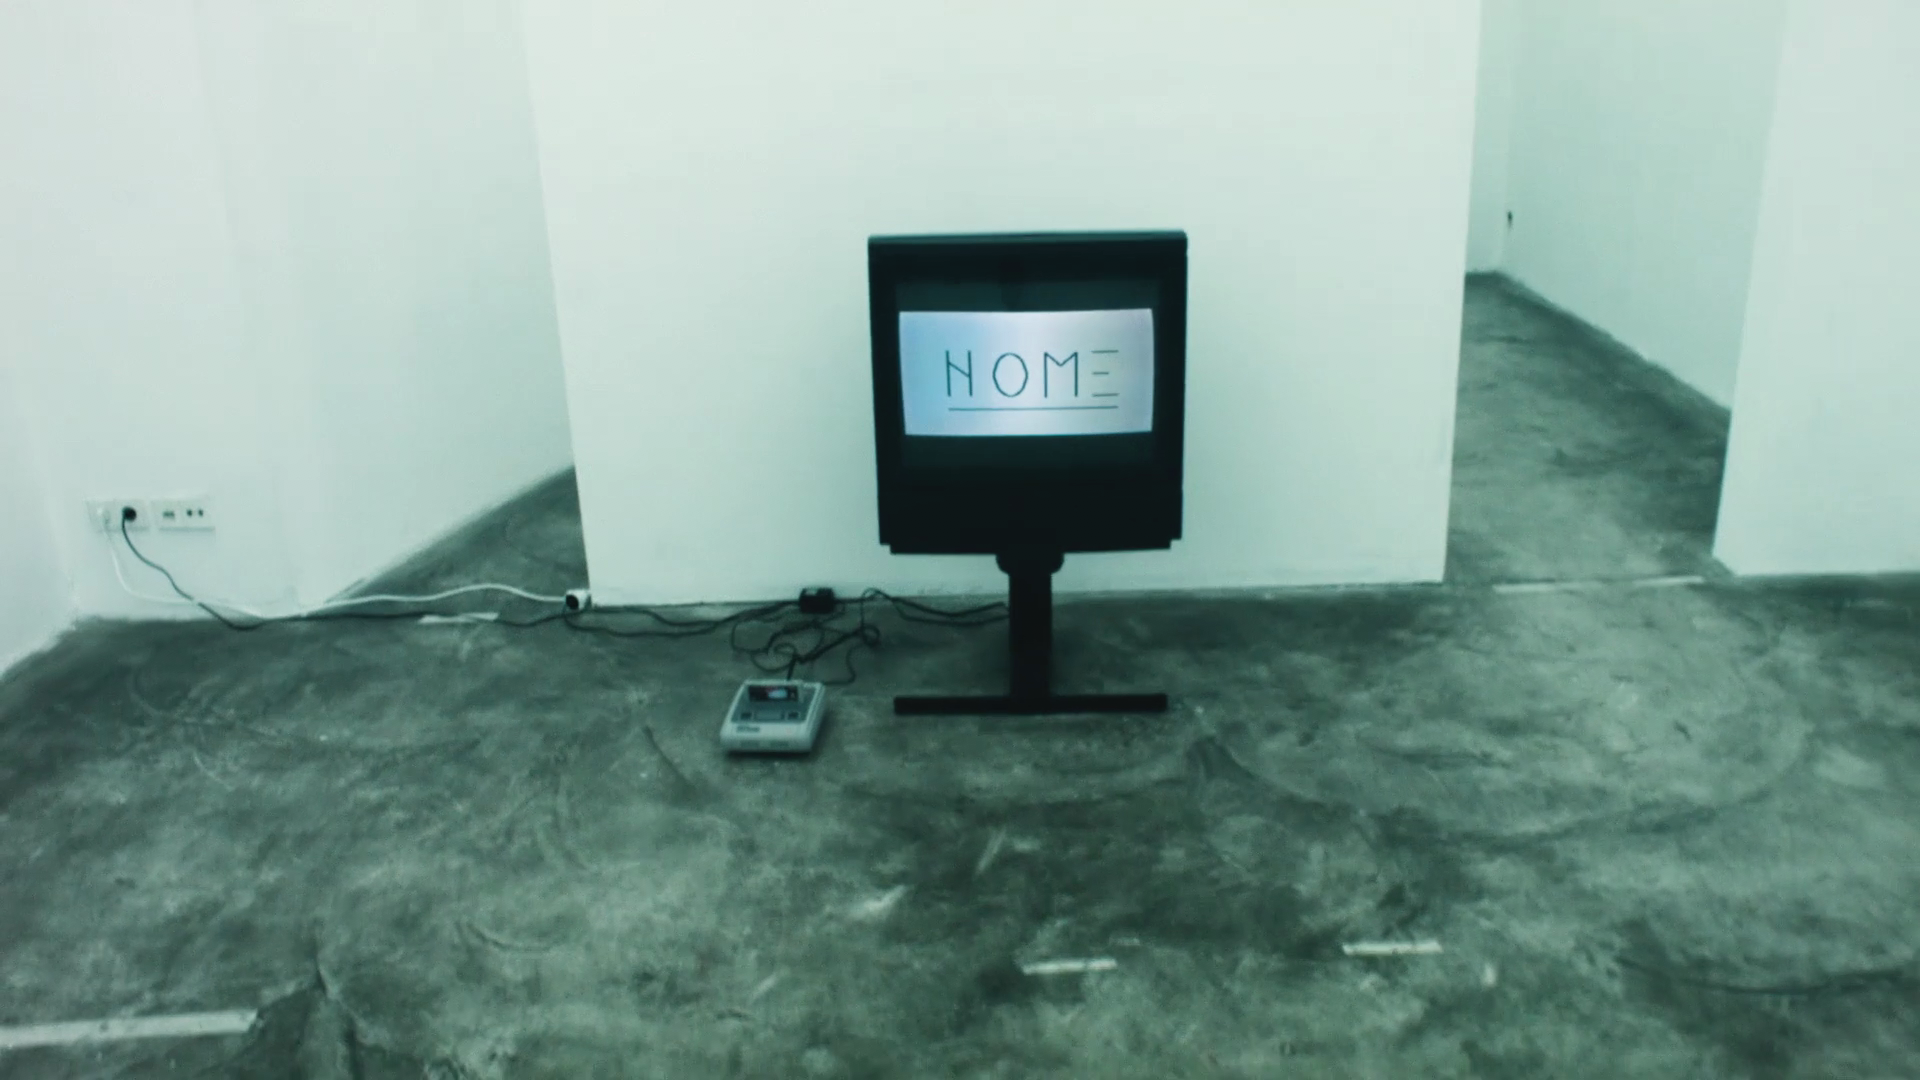  Lars Preisser,  HOME/NOME,  digital video, color, sound, 4’ 16, 2021-2022, Germany 